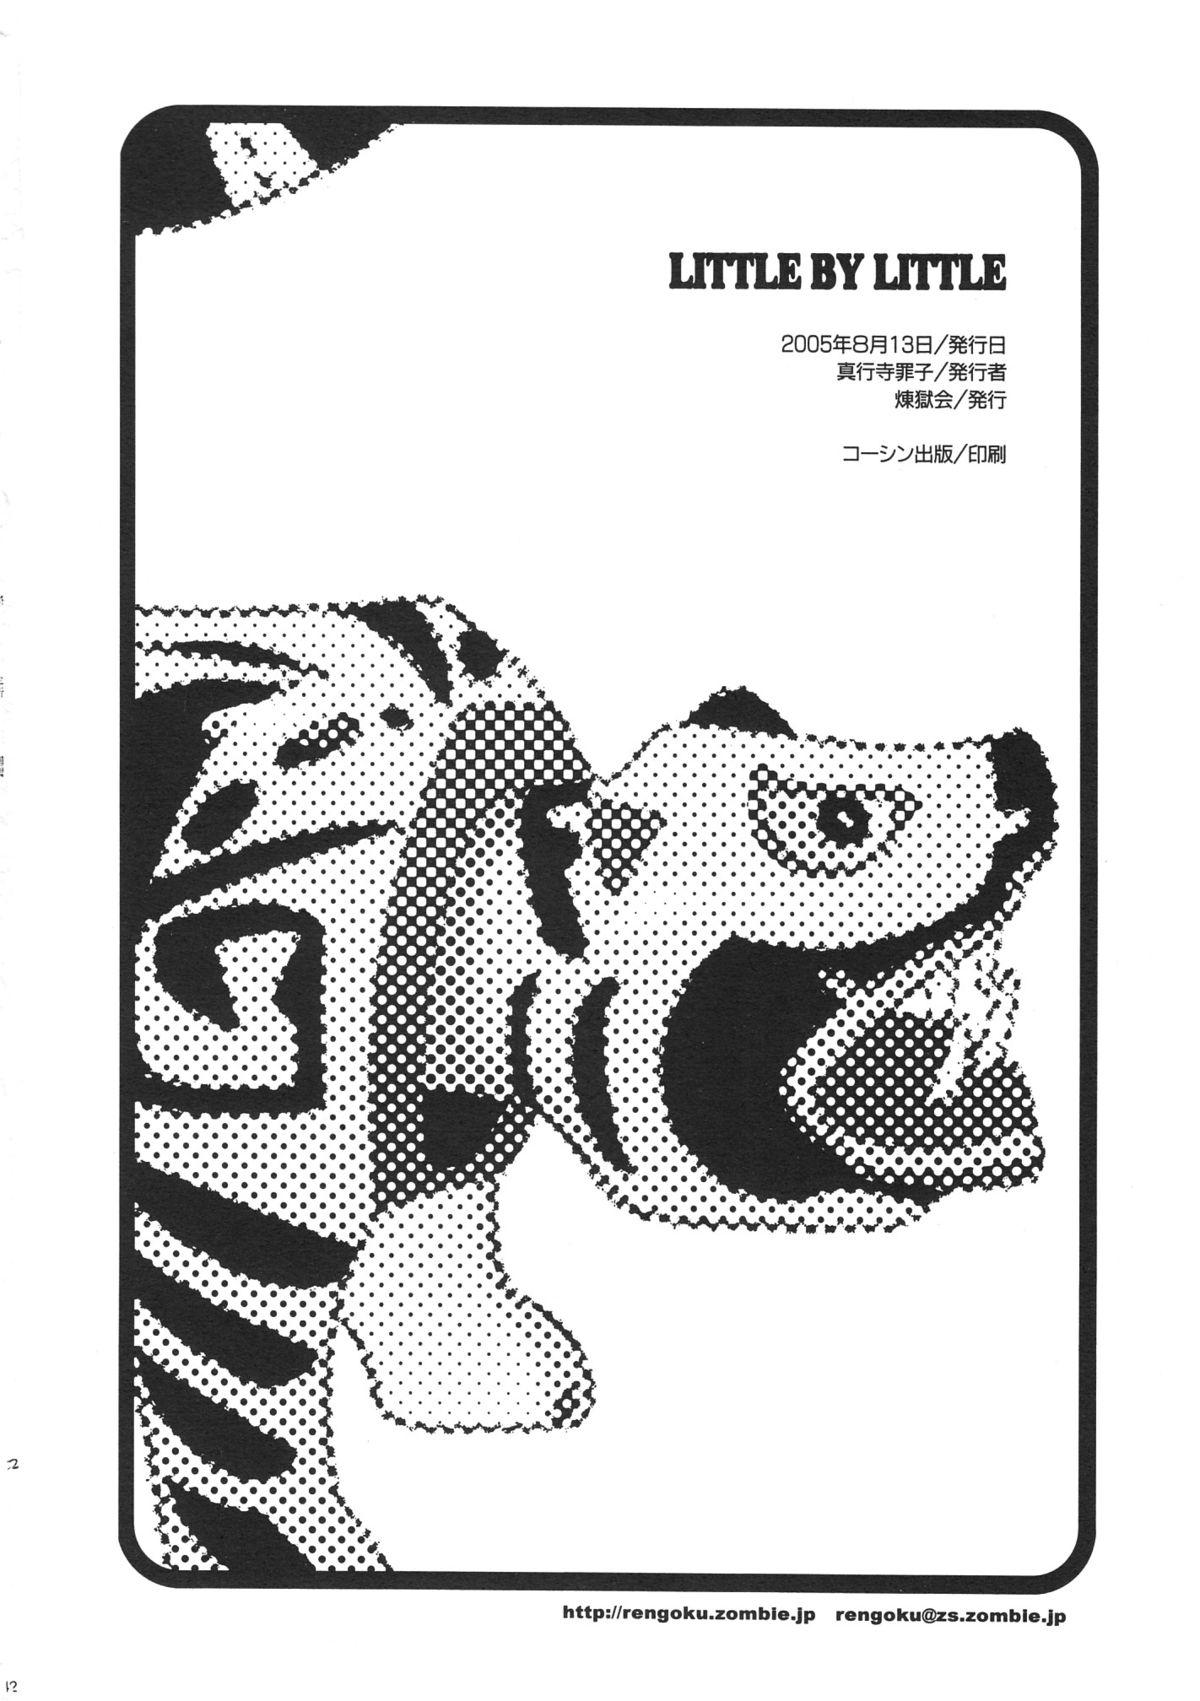 LITTLE BY LITTLE 40